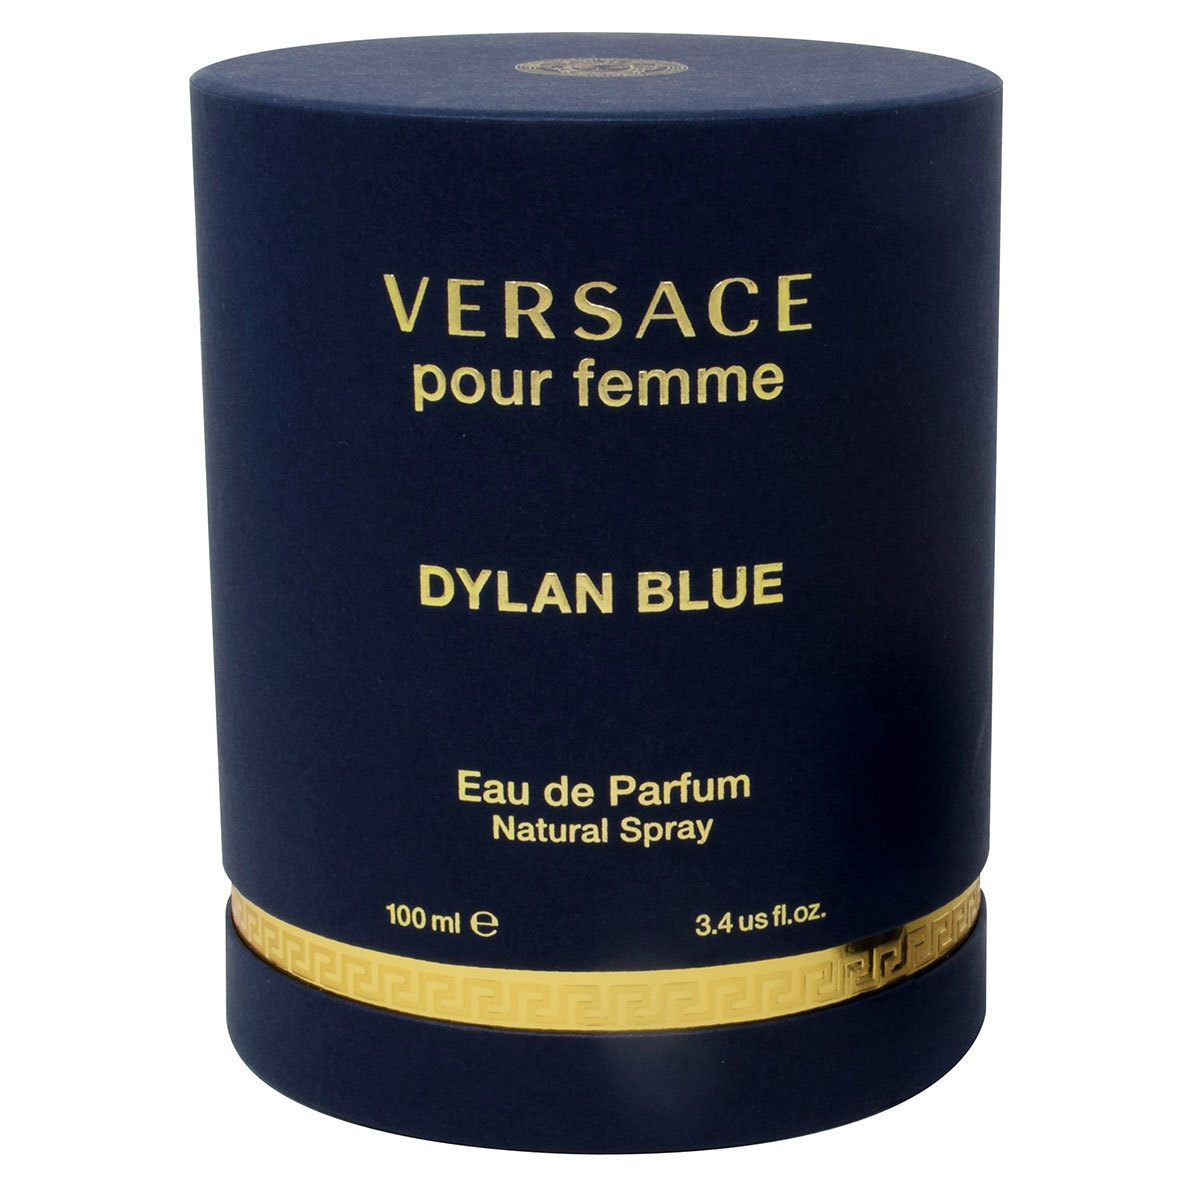 Versace Dylan Blue Pour Femme 100 ml